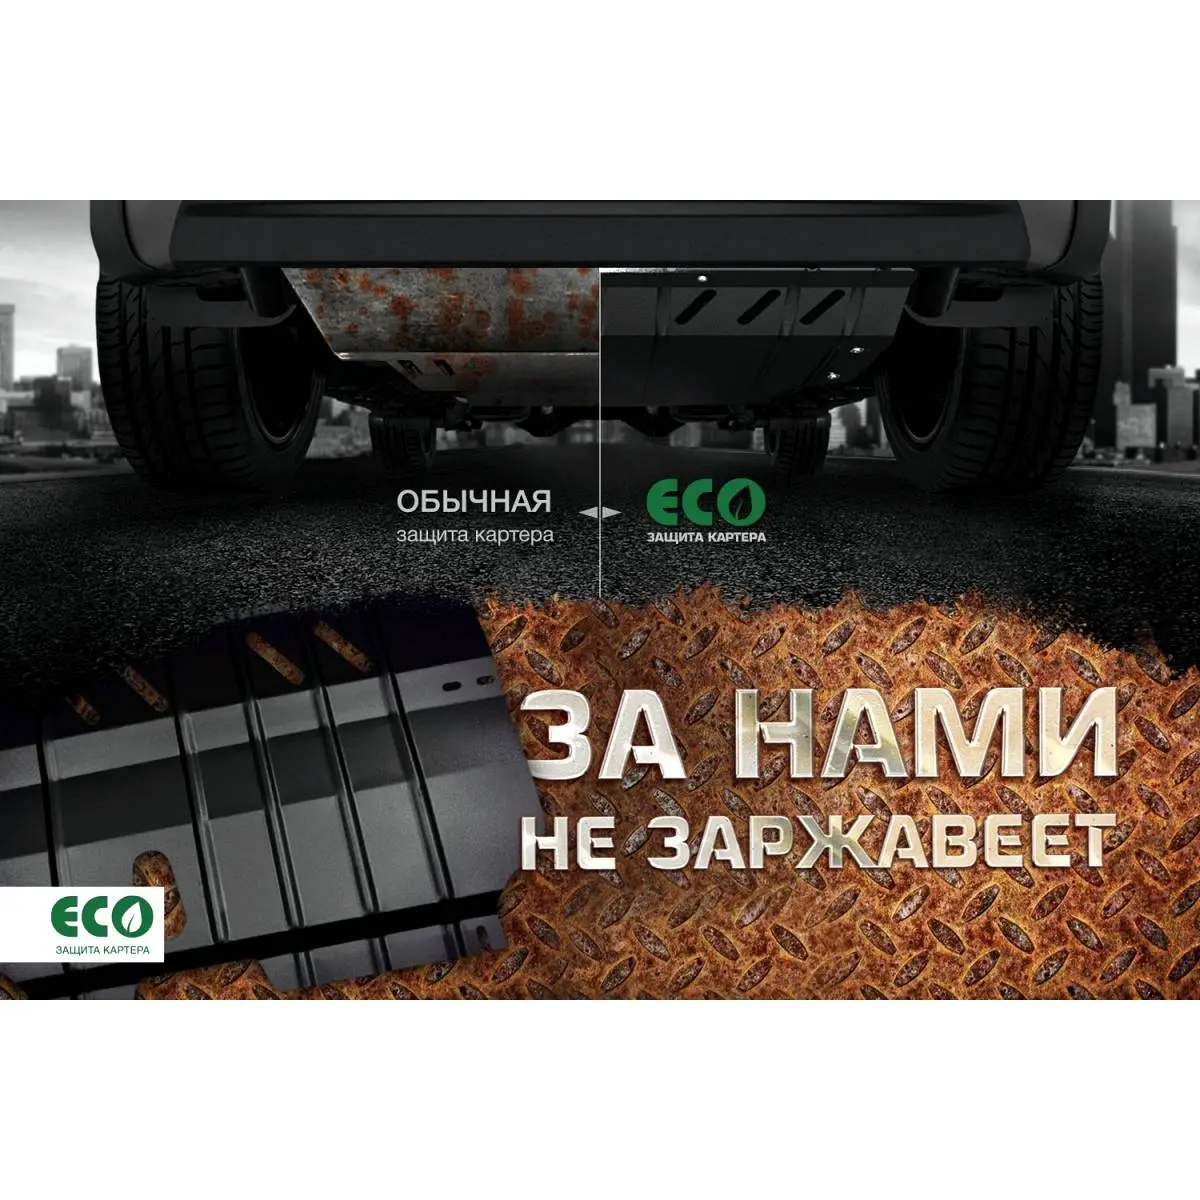 Комплект защиты радиатора и крепежа Eco NO9 HCU 1437099146 6Z4X0V eco9903320 изображение 2